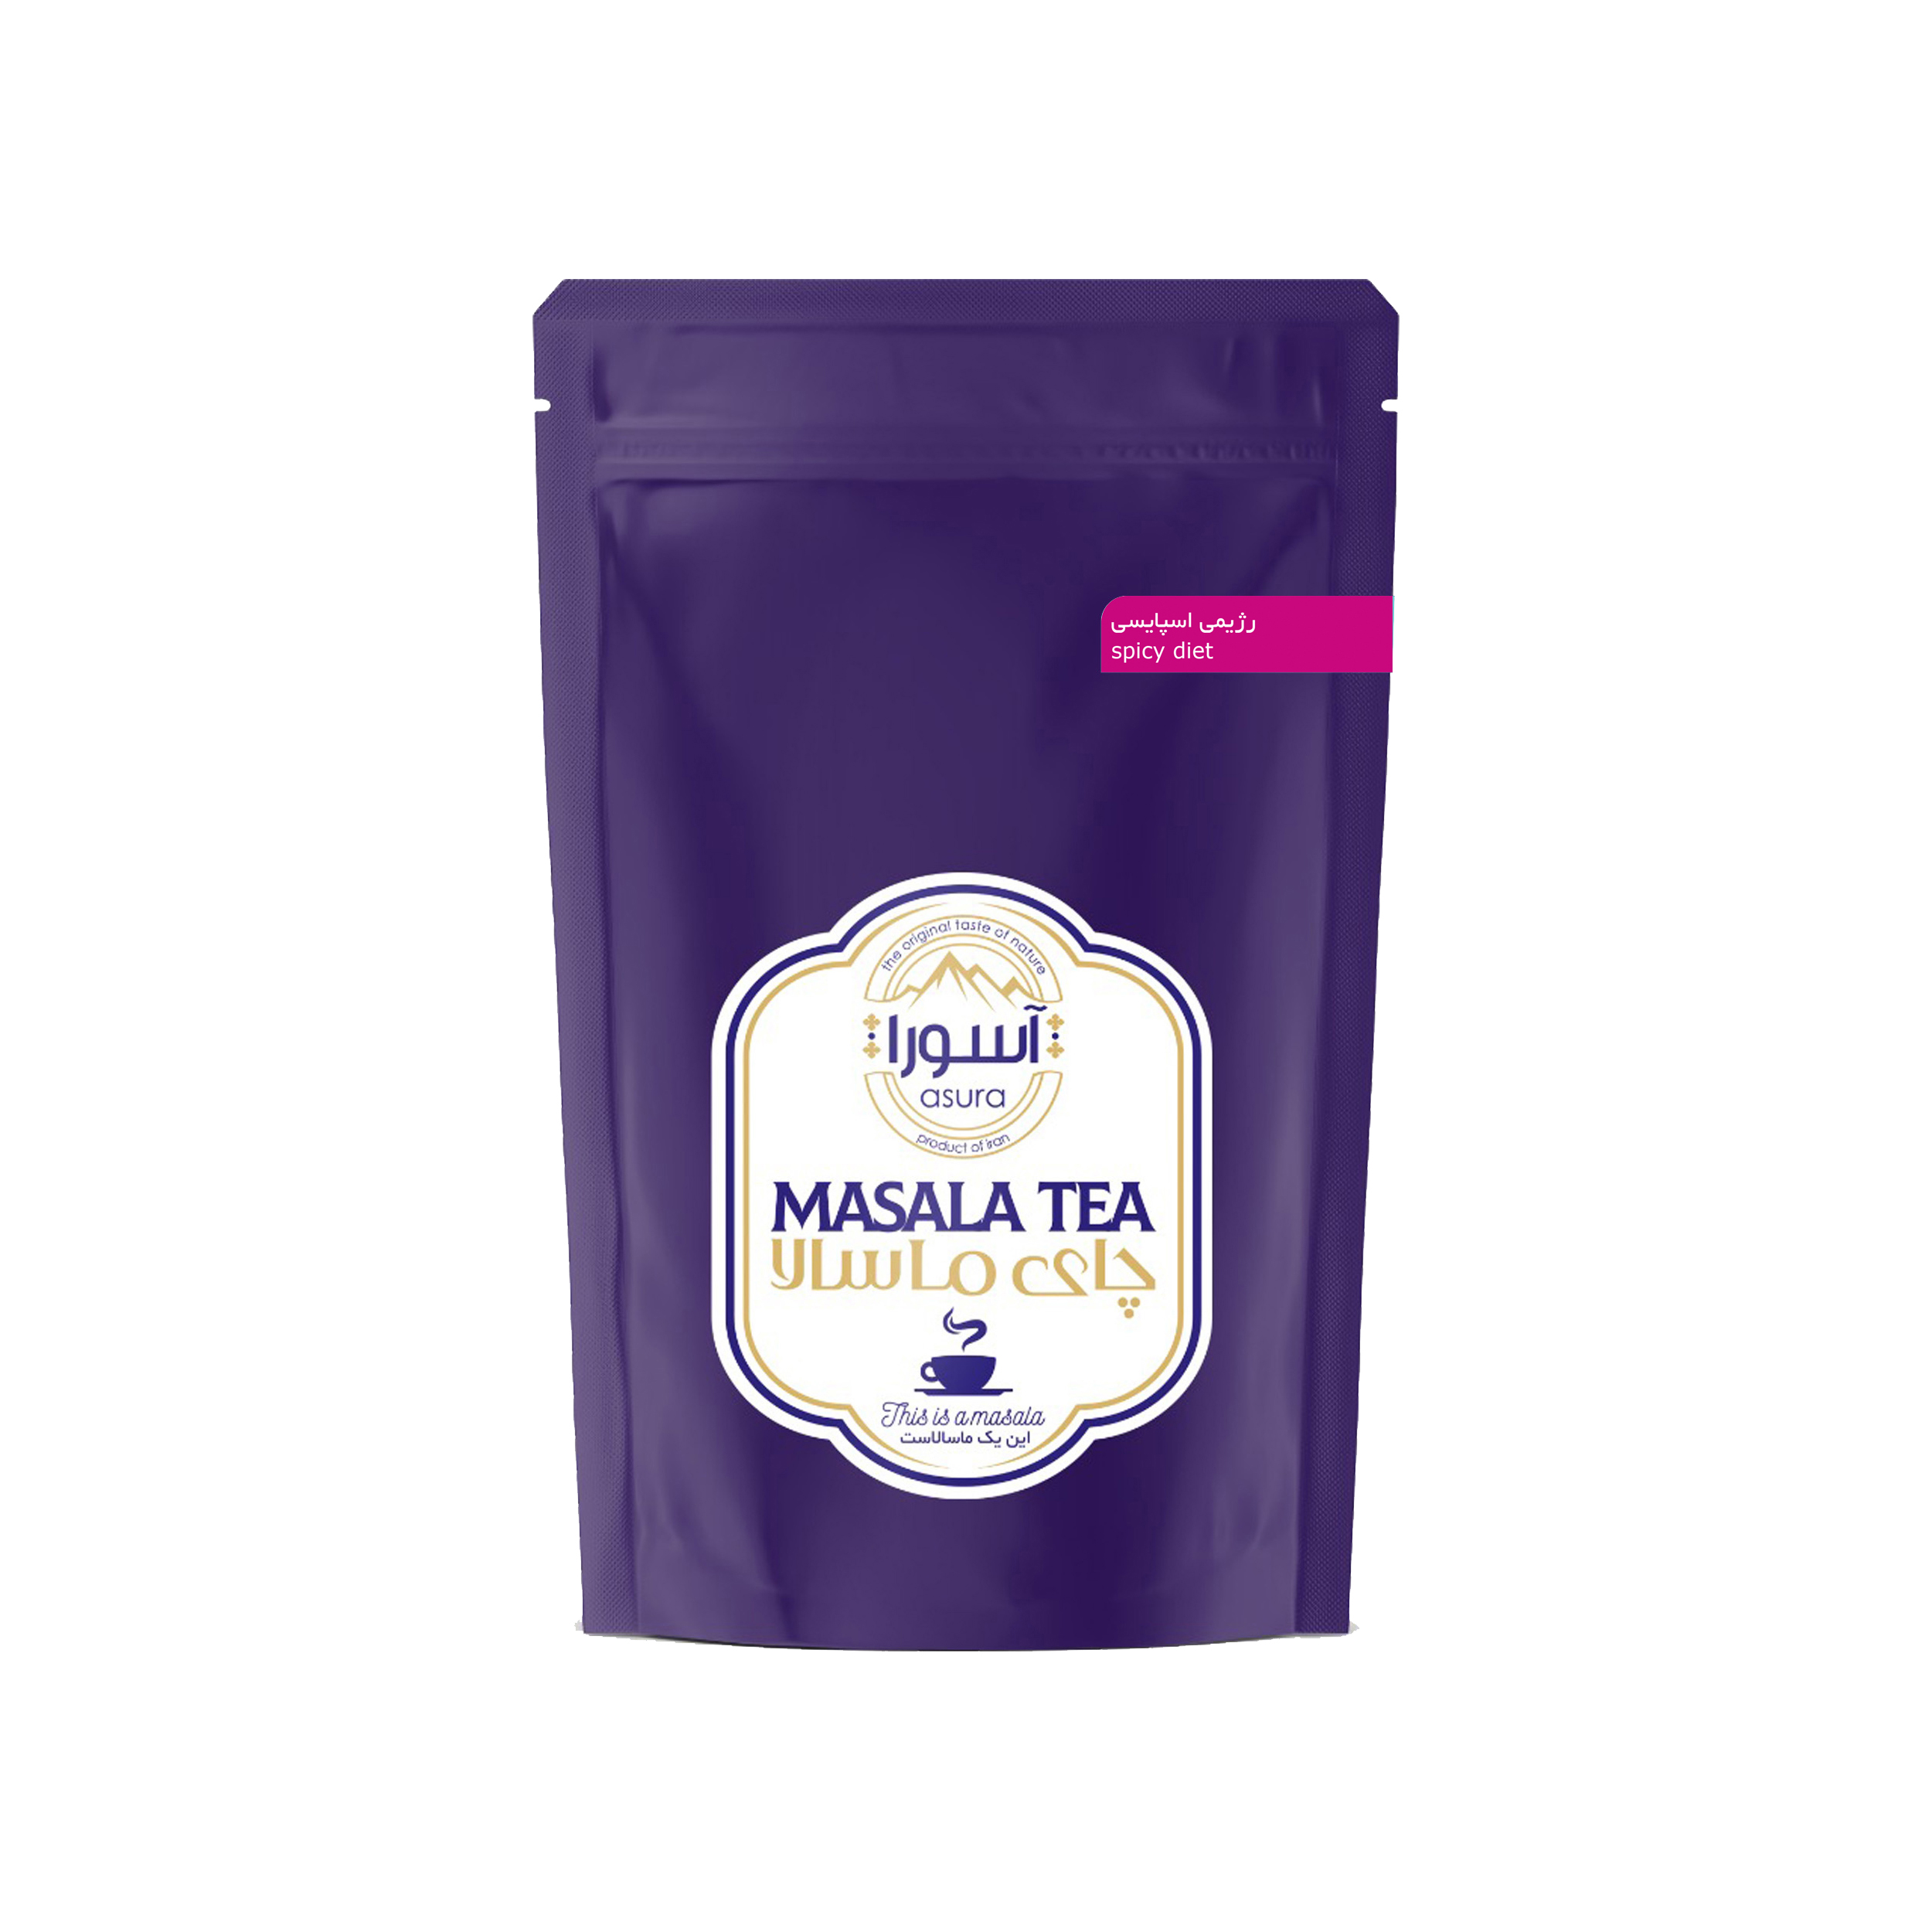  چای ماسالا رژیمی اسپایسی آسورا - 250 گرم 